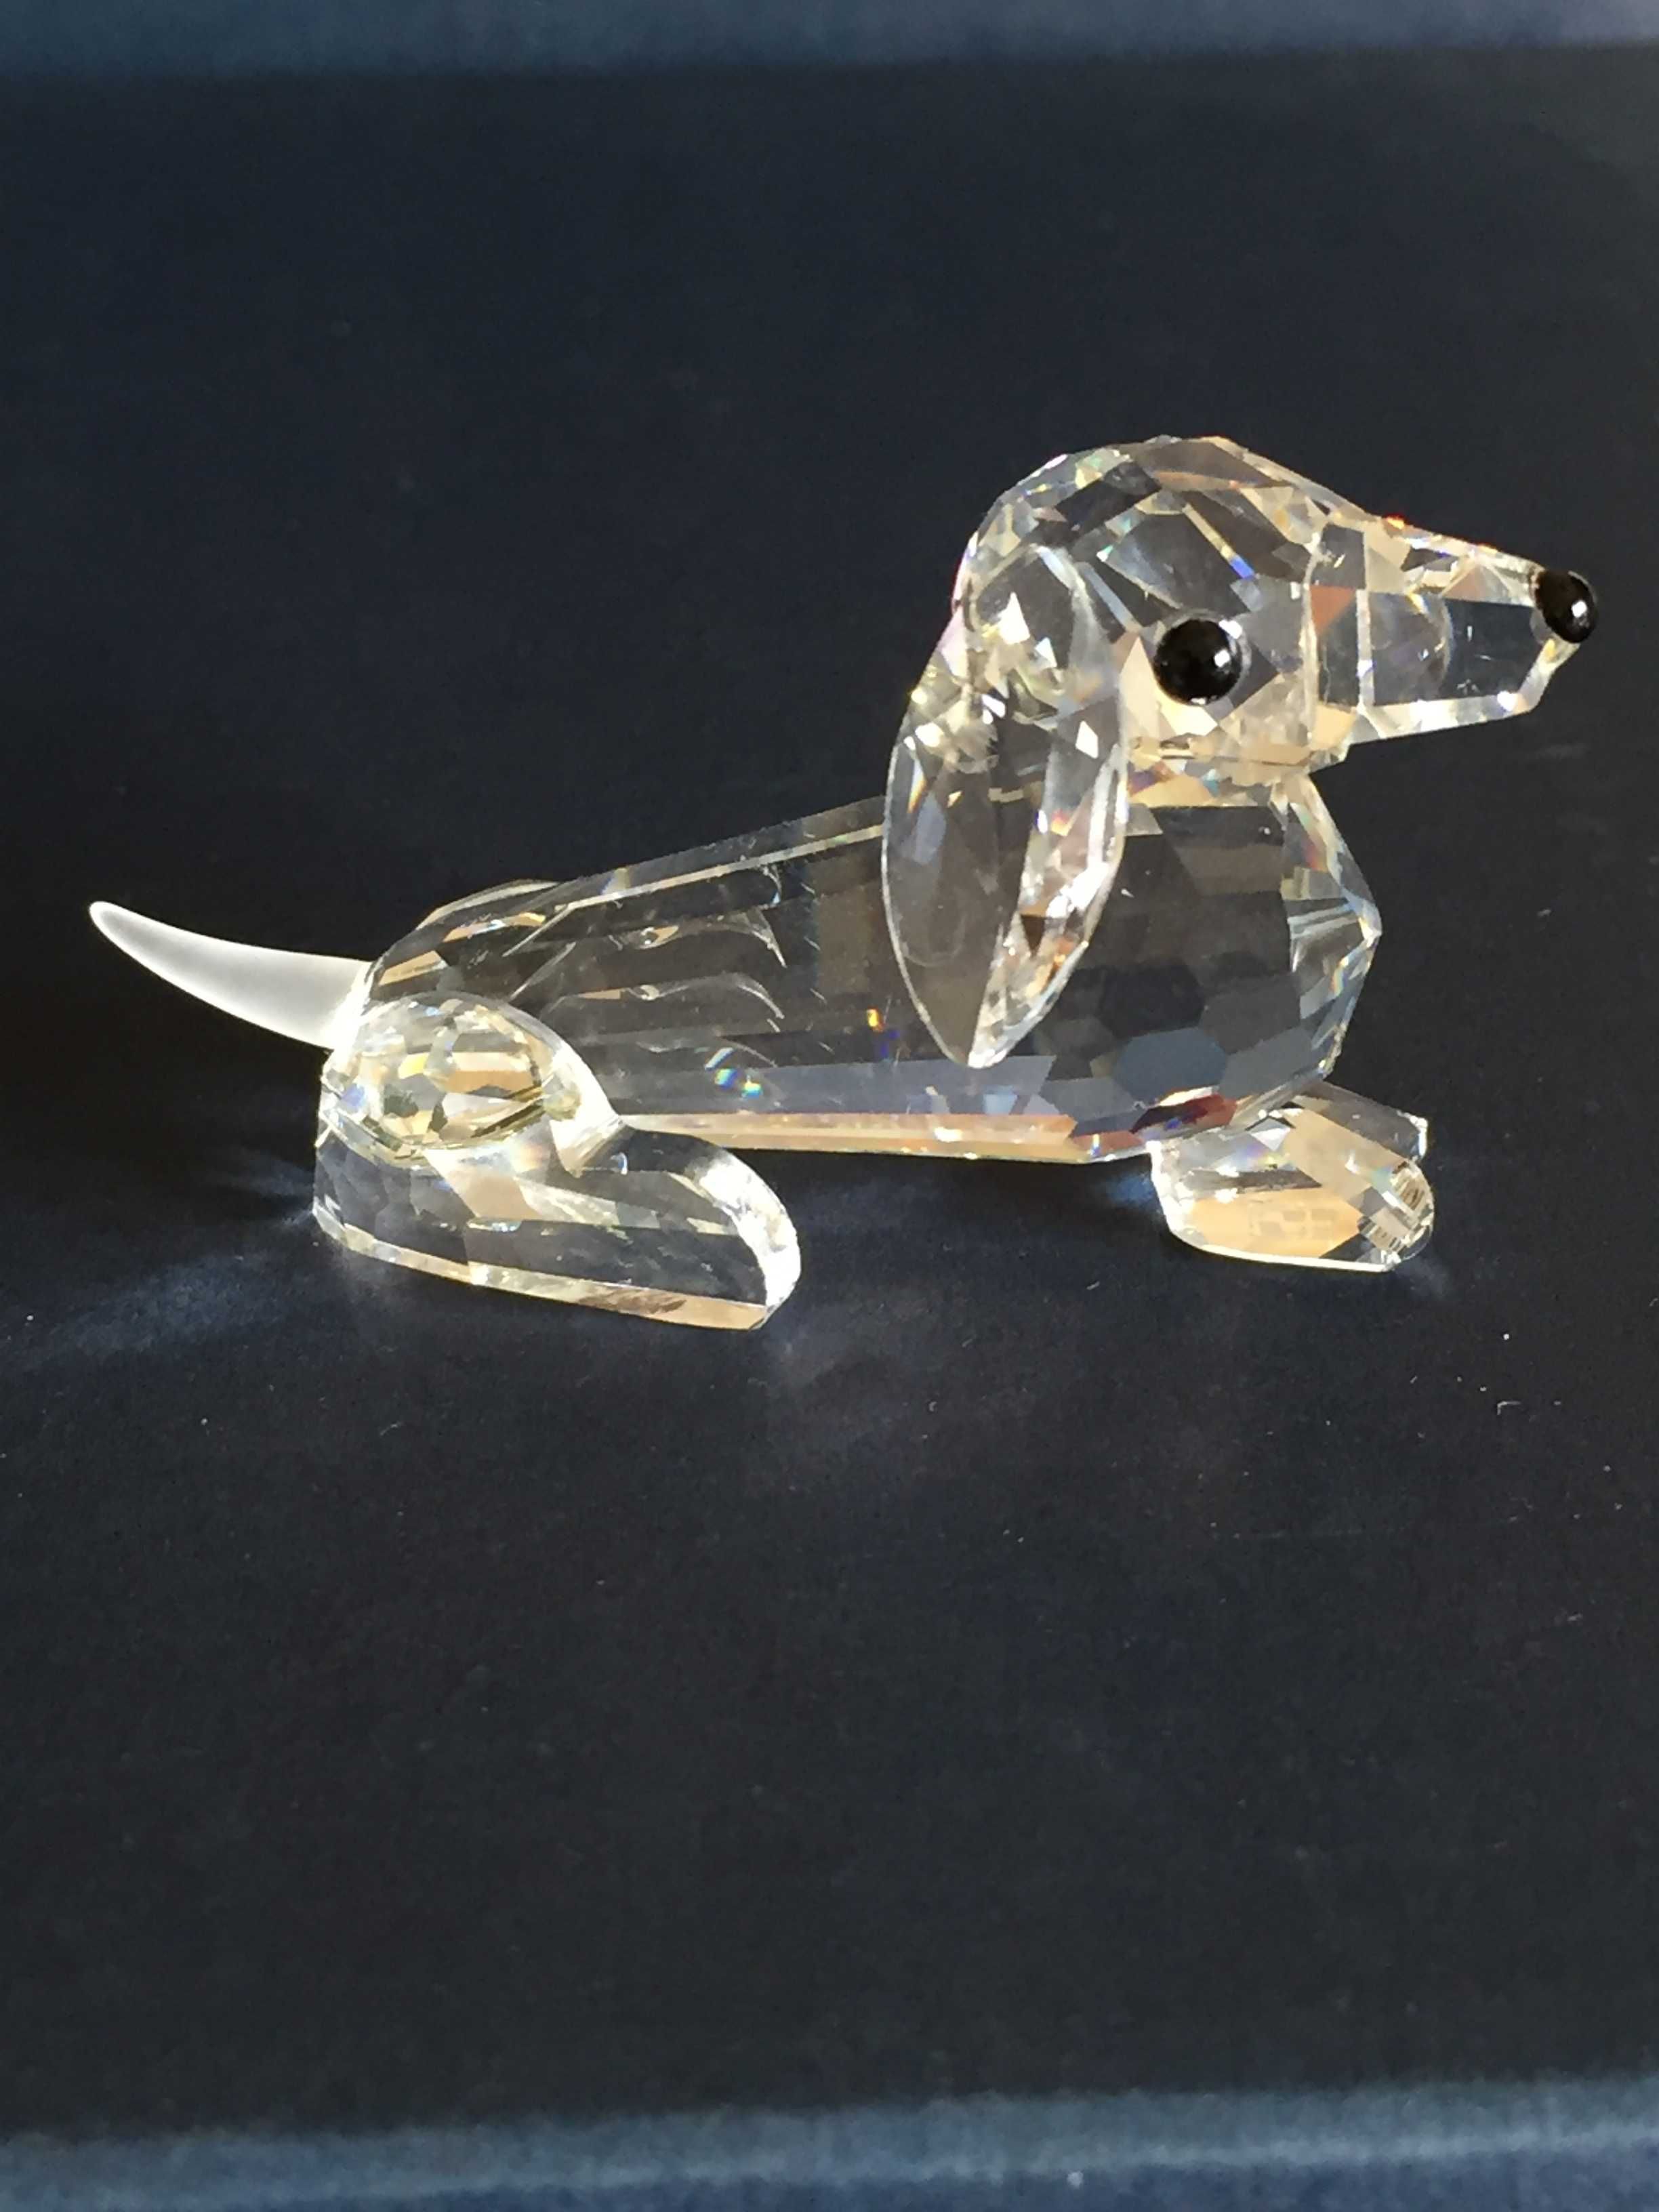 Miniaturas de animais  em cristal Swarovski